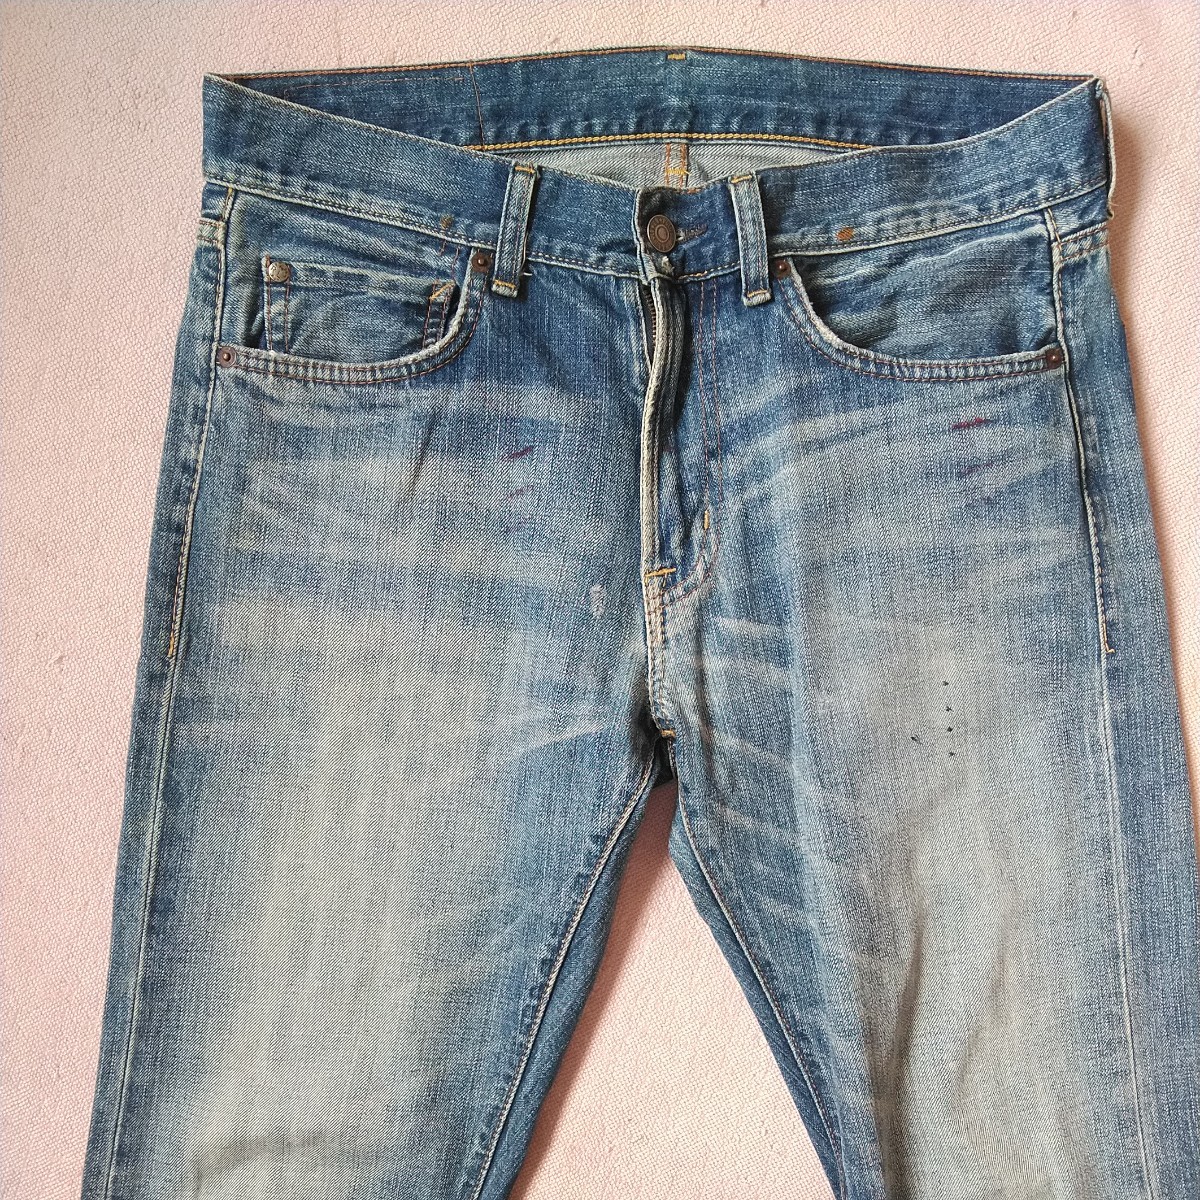  Polo Ralph Lauren denim&supply Denim джинсы 31×32 конический hige цвет .. индиго 